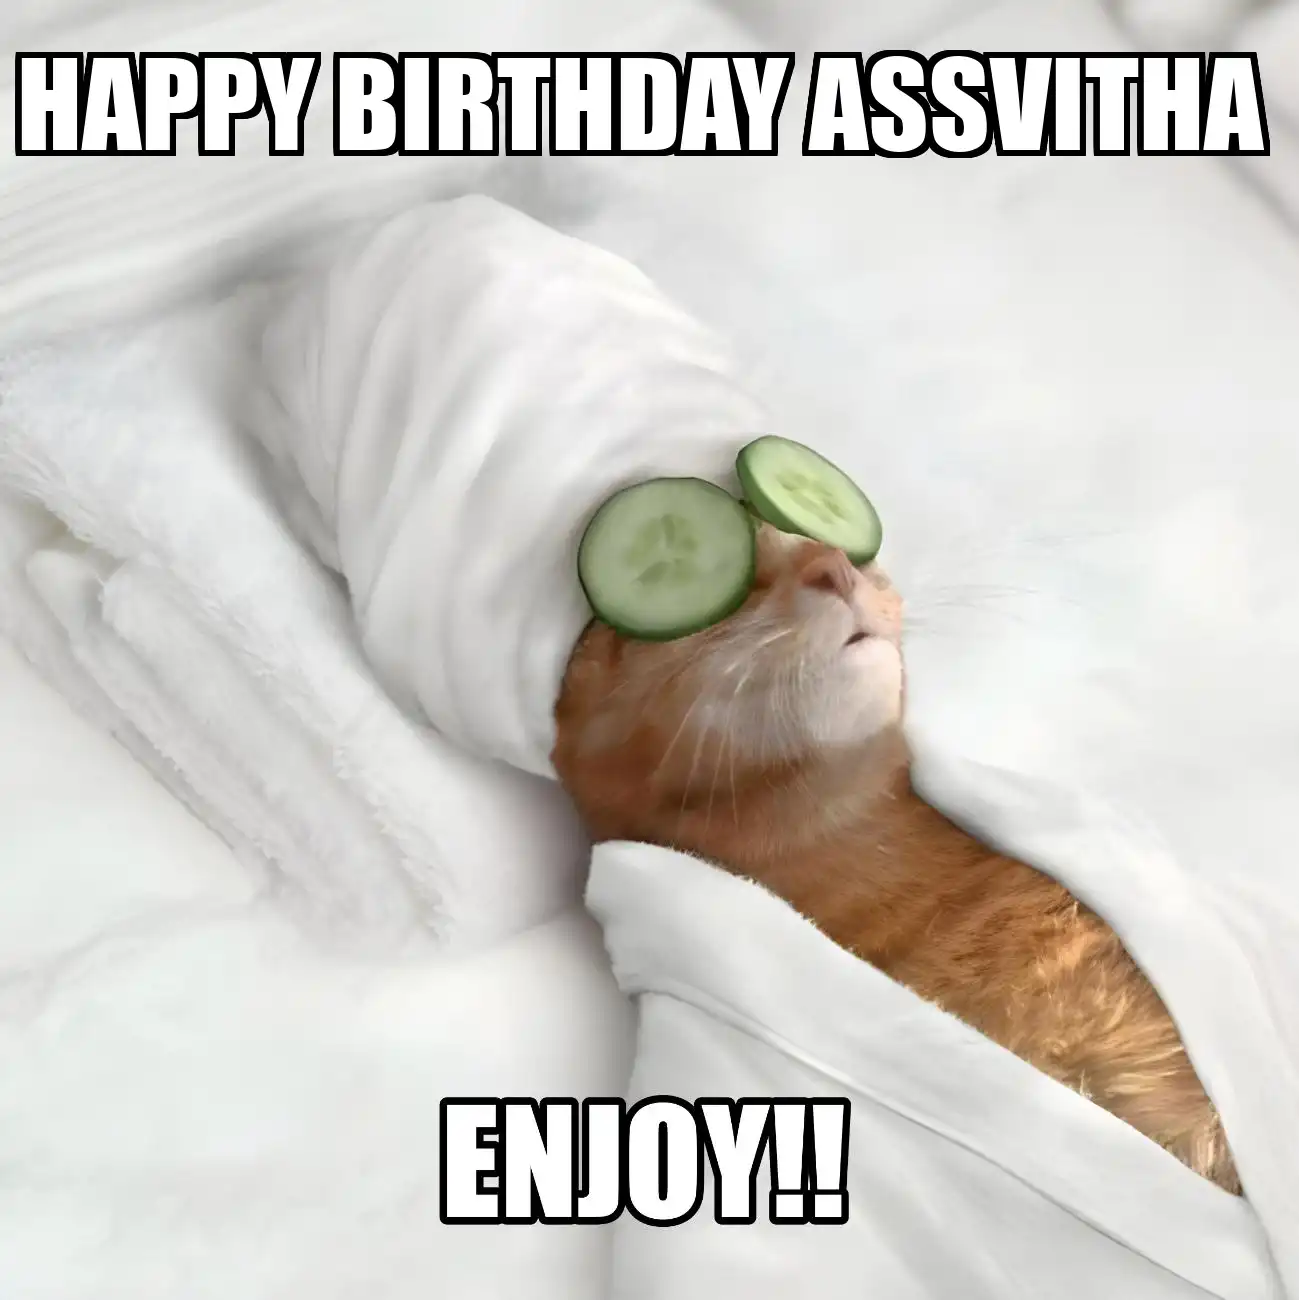 Happy Birthday Assvitha Enjoy Cat Meme